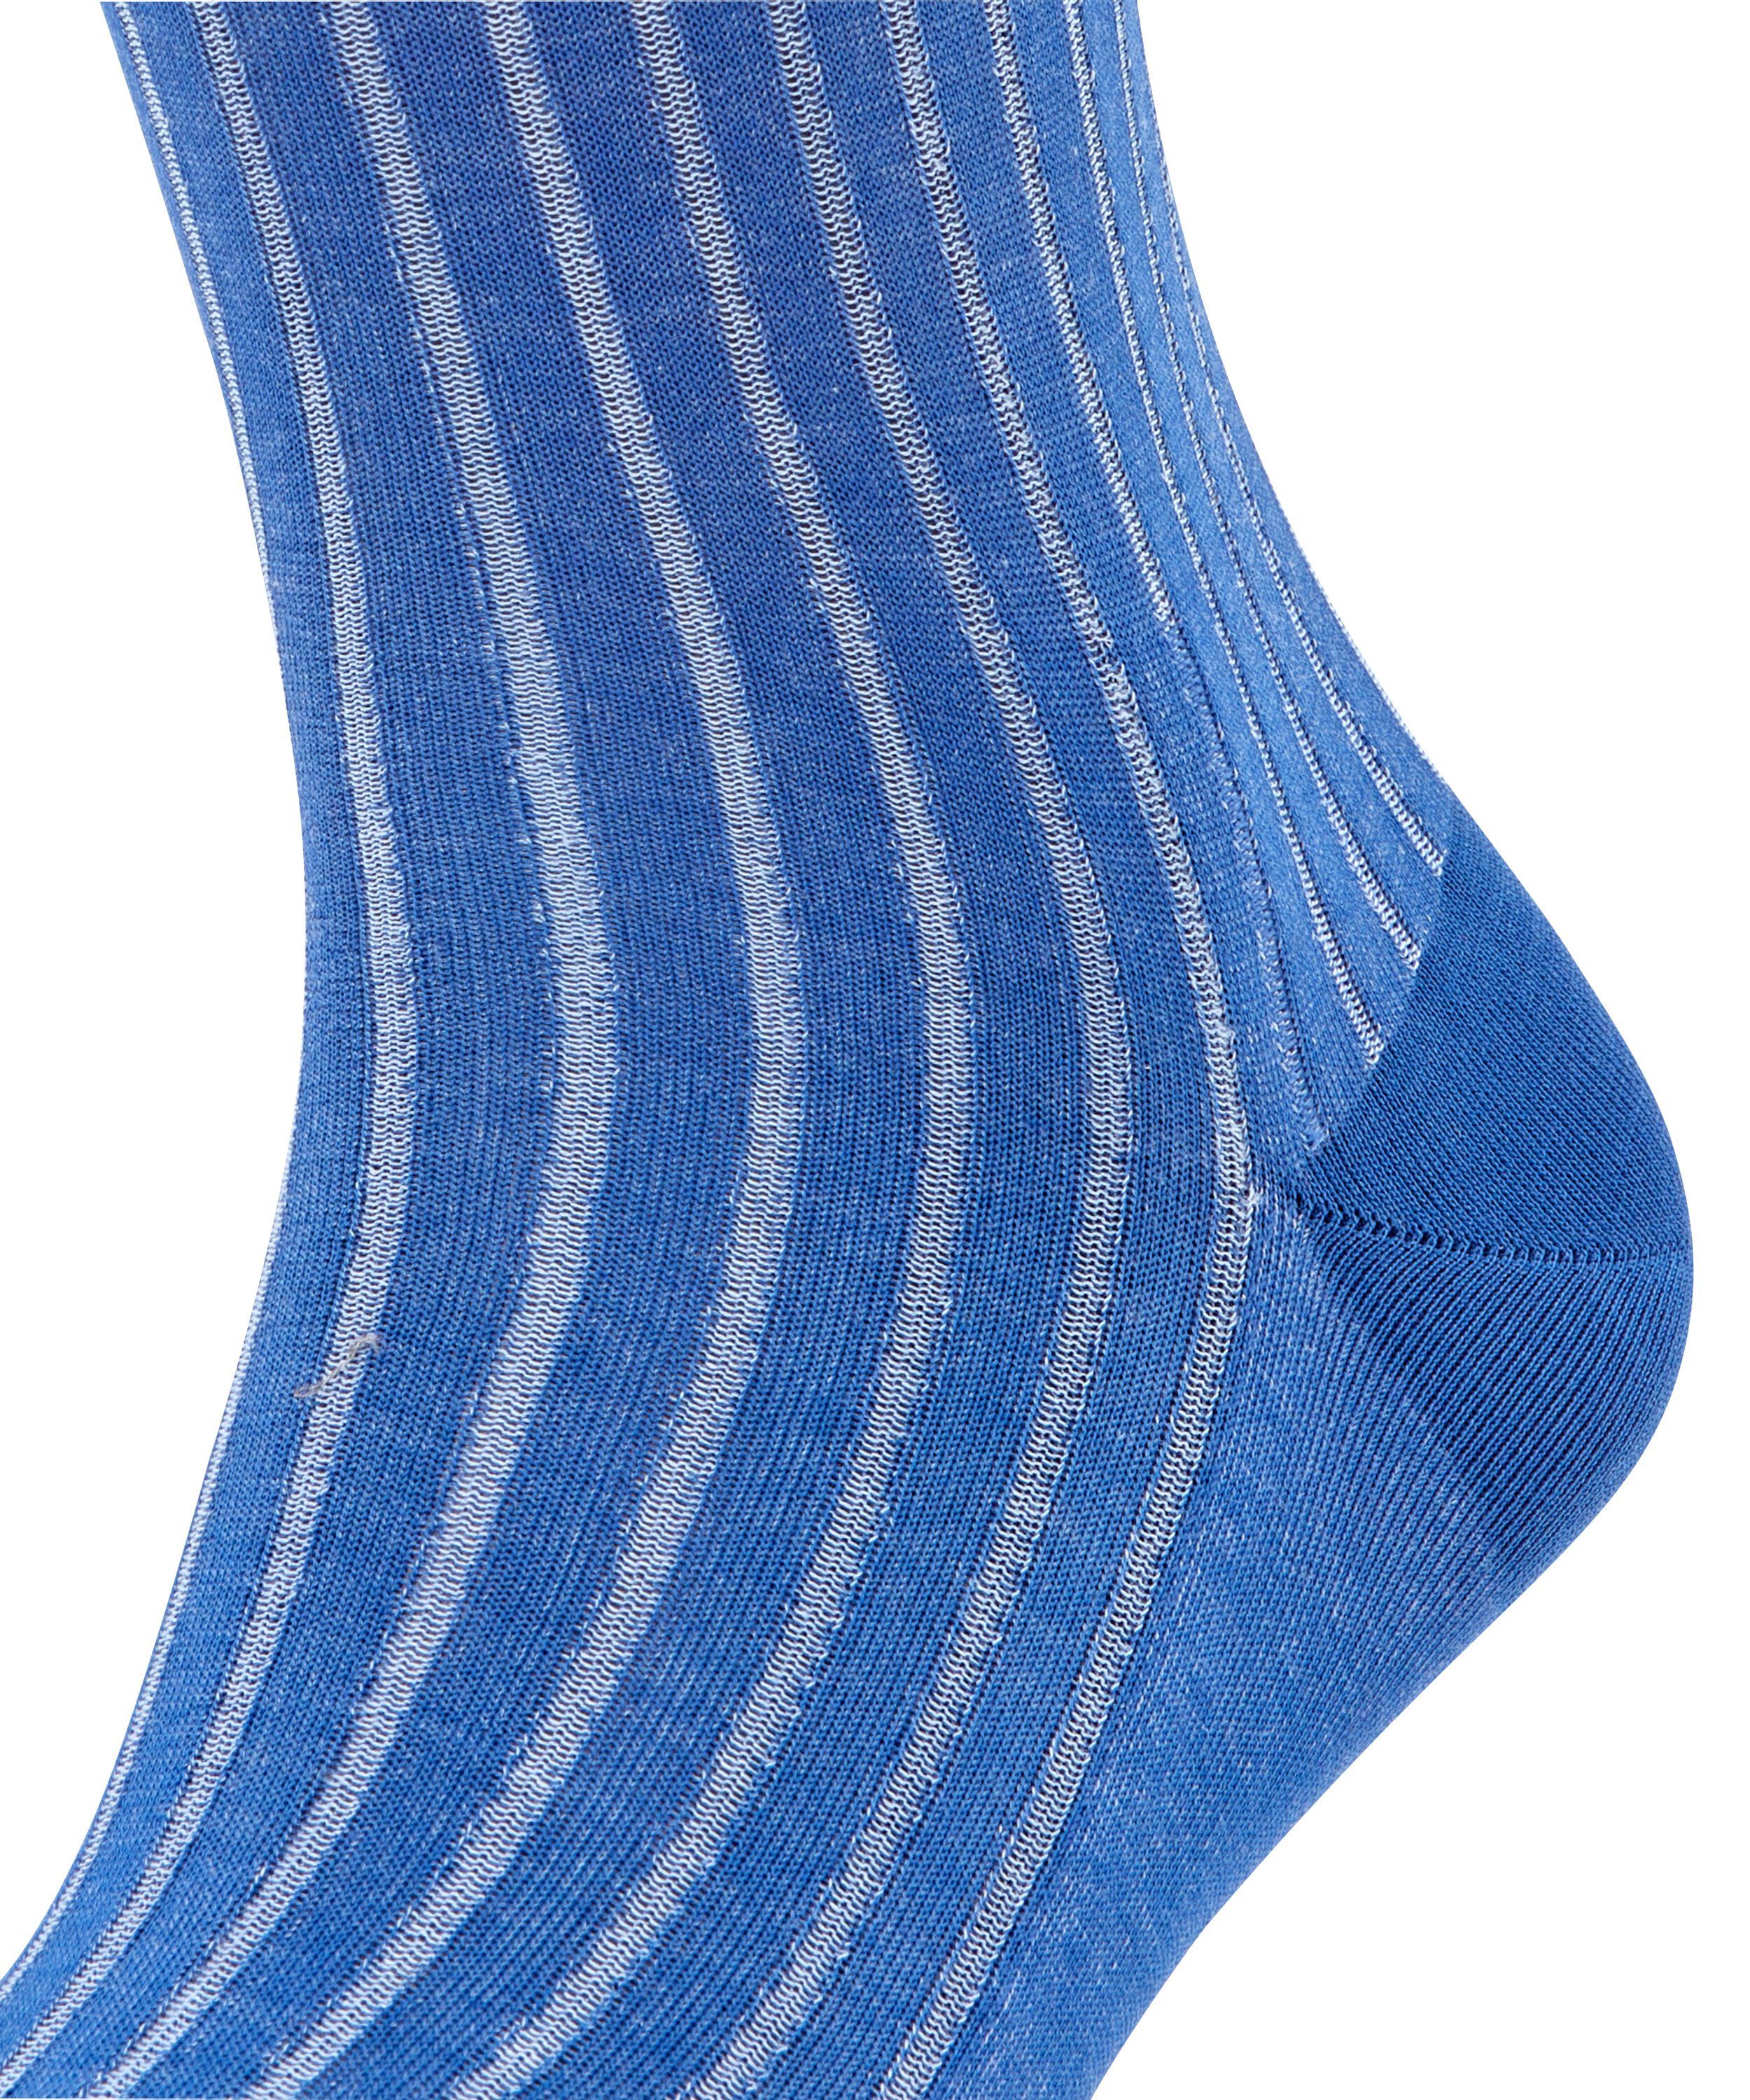 Shadow (6057) Socken FALKE blue (1-Paar) paris